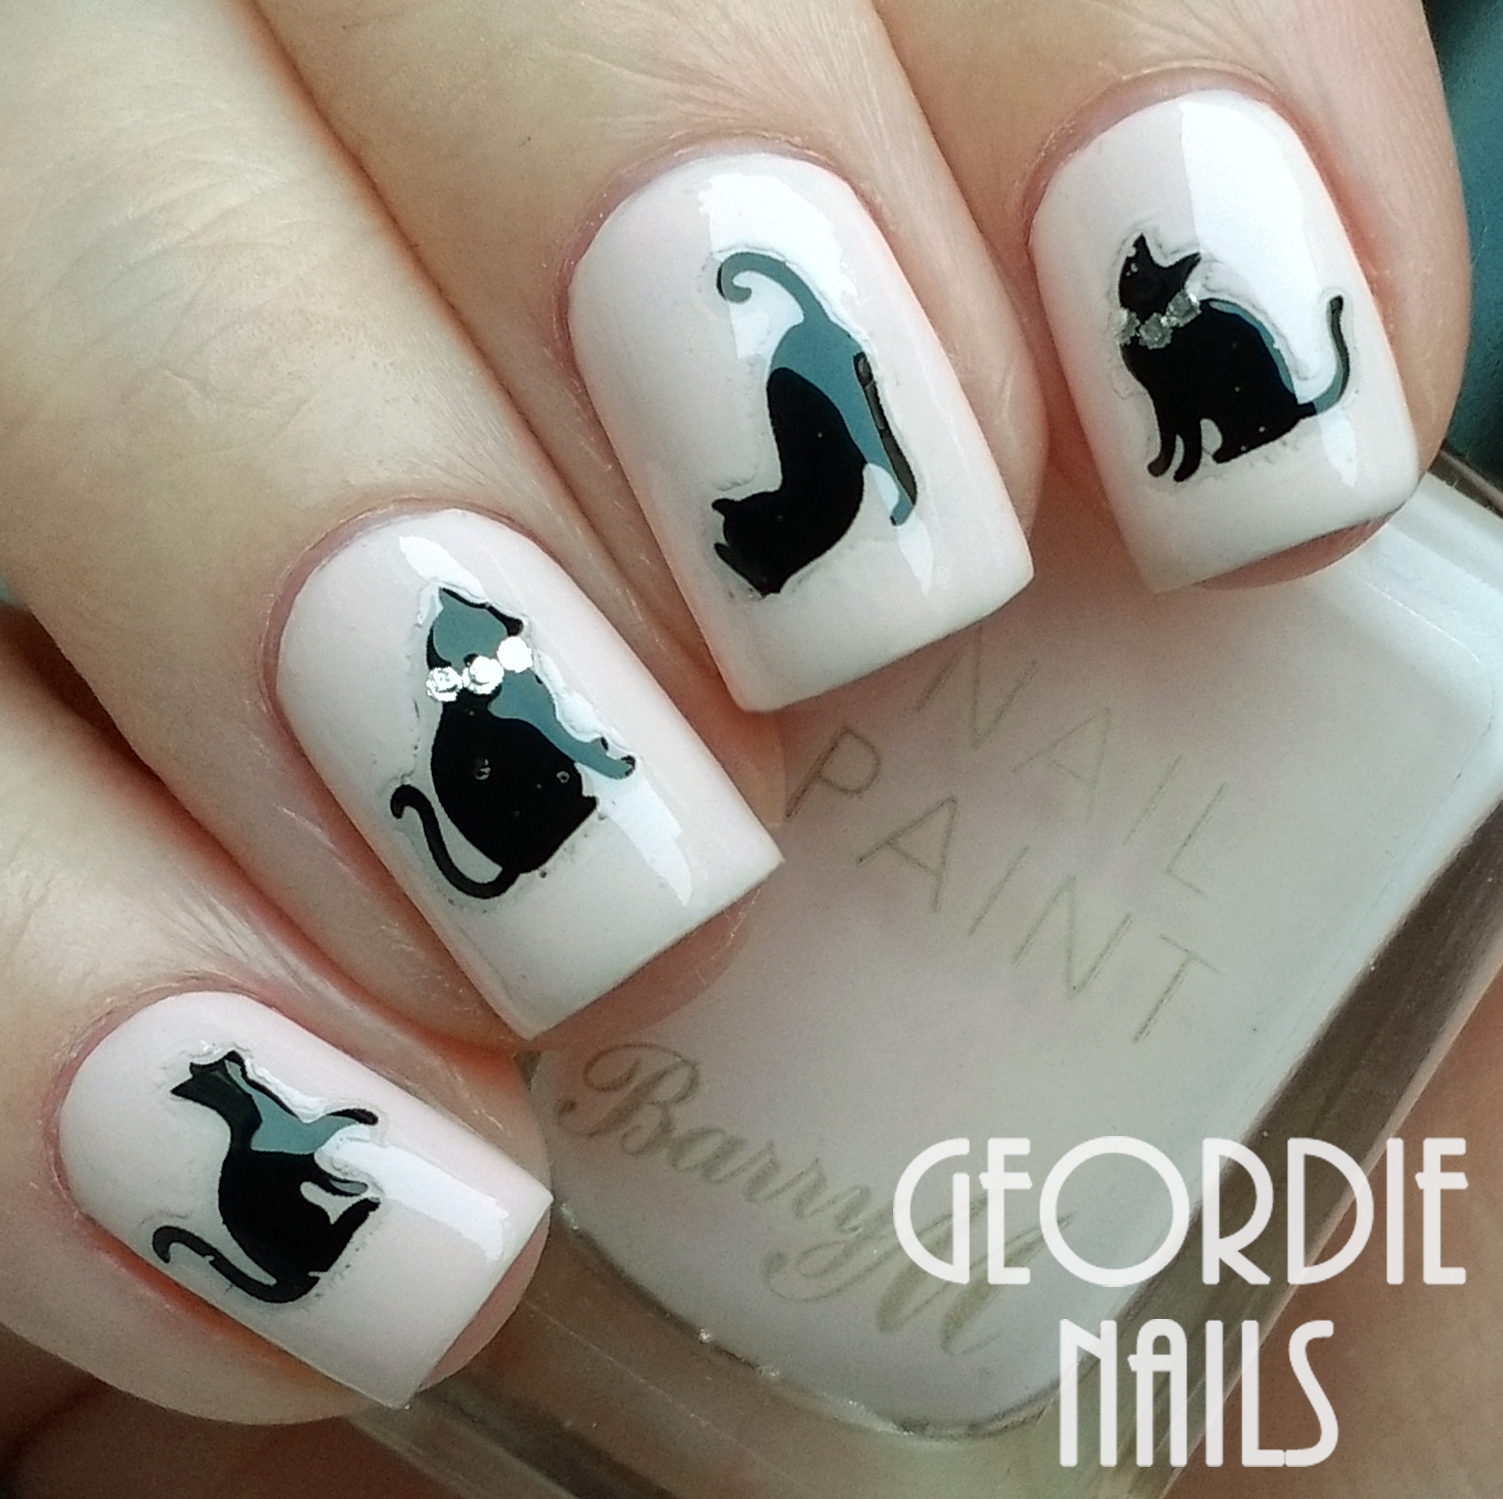 Geordie Nails